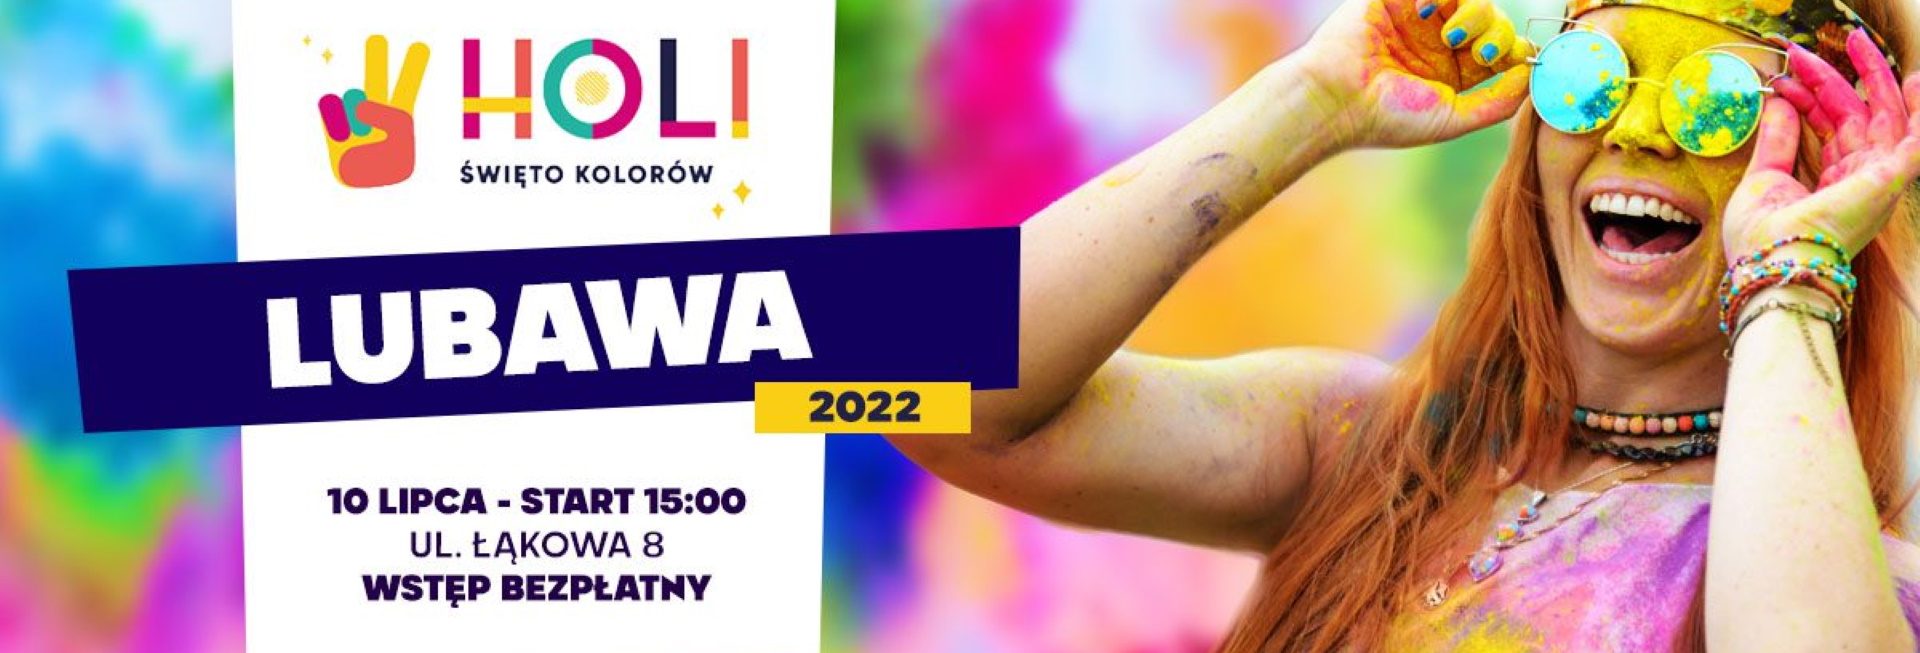 Plakat zapraszający do Lubawy na Holi Święto Kolorów Lubawa 2022.